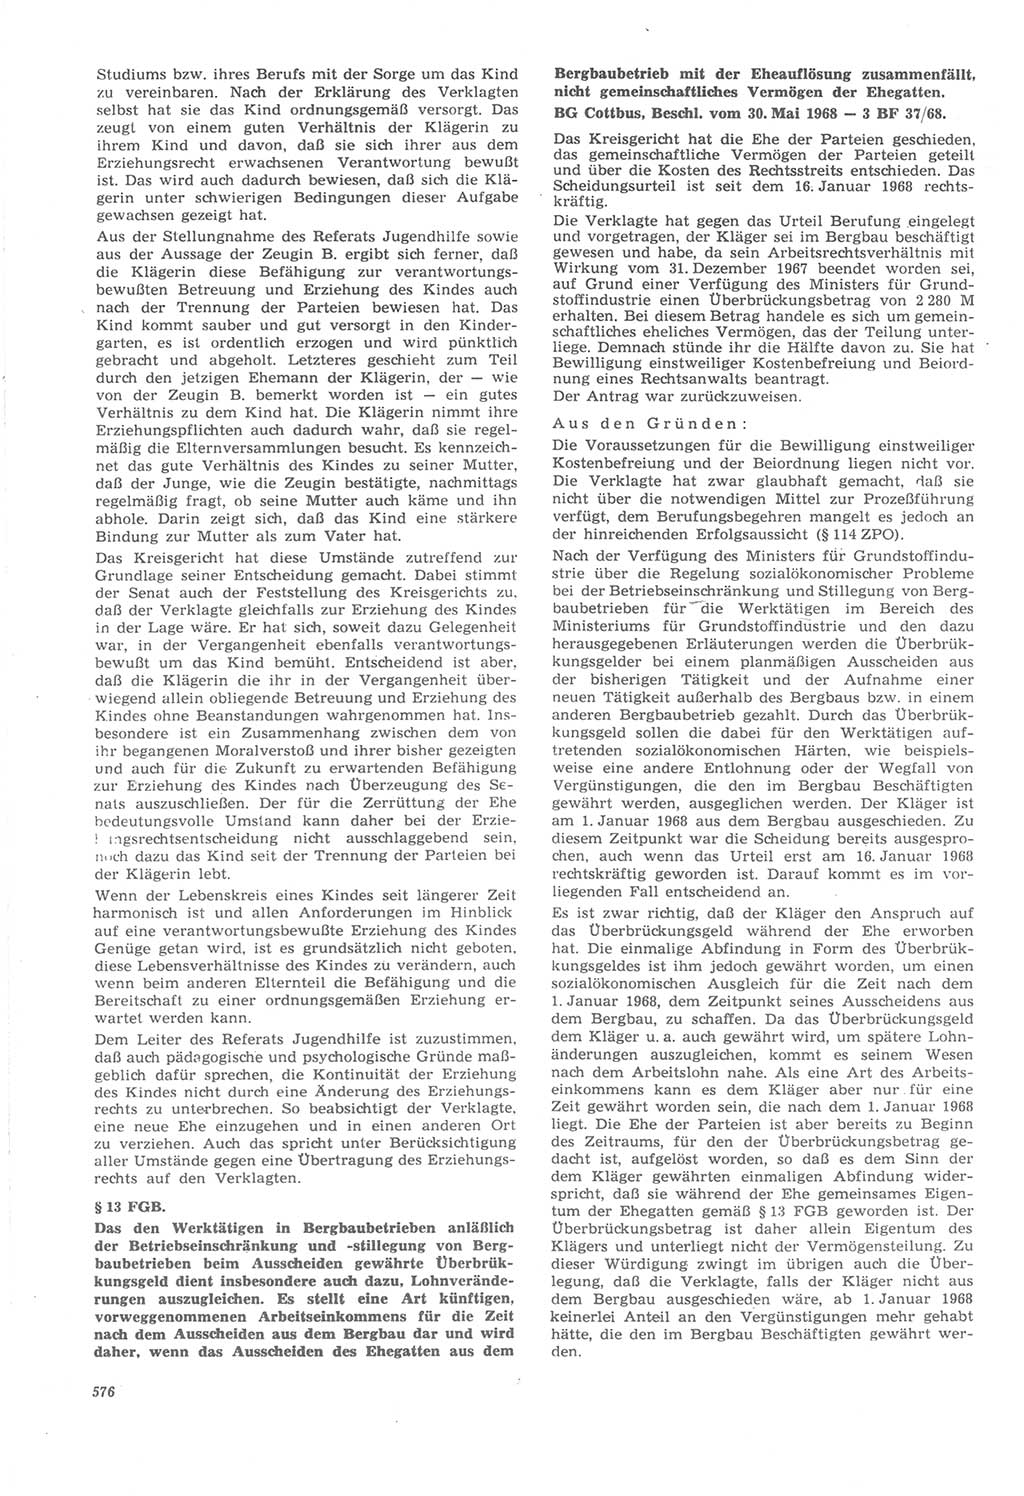 Neue Justiz (NJ), Zeitschrift für Recht und Rechtswissenschaft [Deutsche Demokratische Republik (DDR)], 22. Jahrgang 1968, Seite 576 (NJ DDR 1968, S. 576)